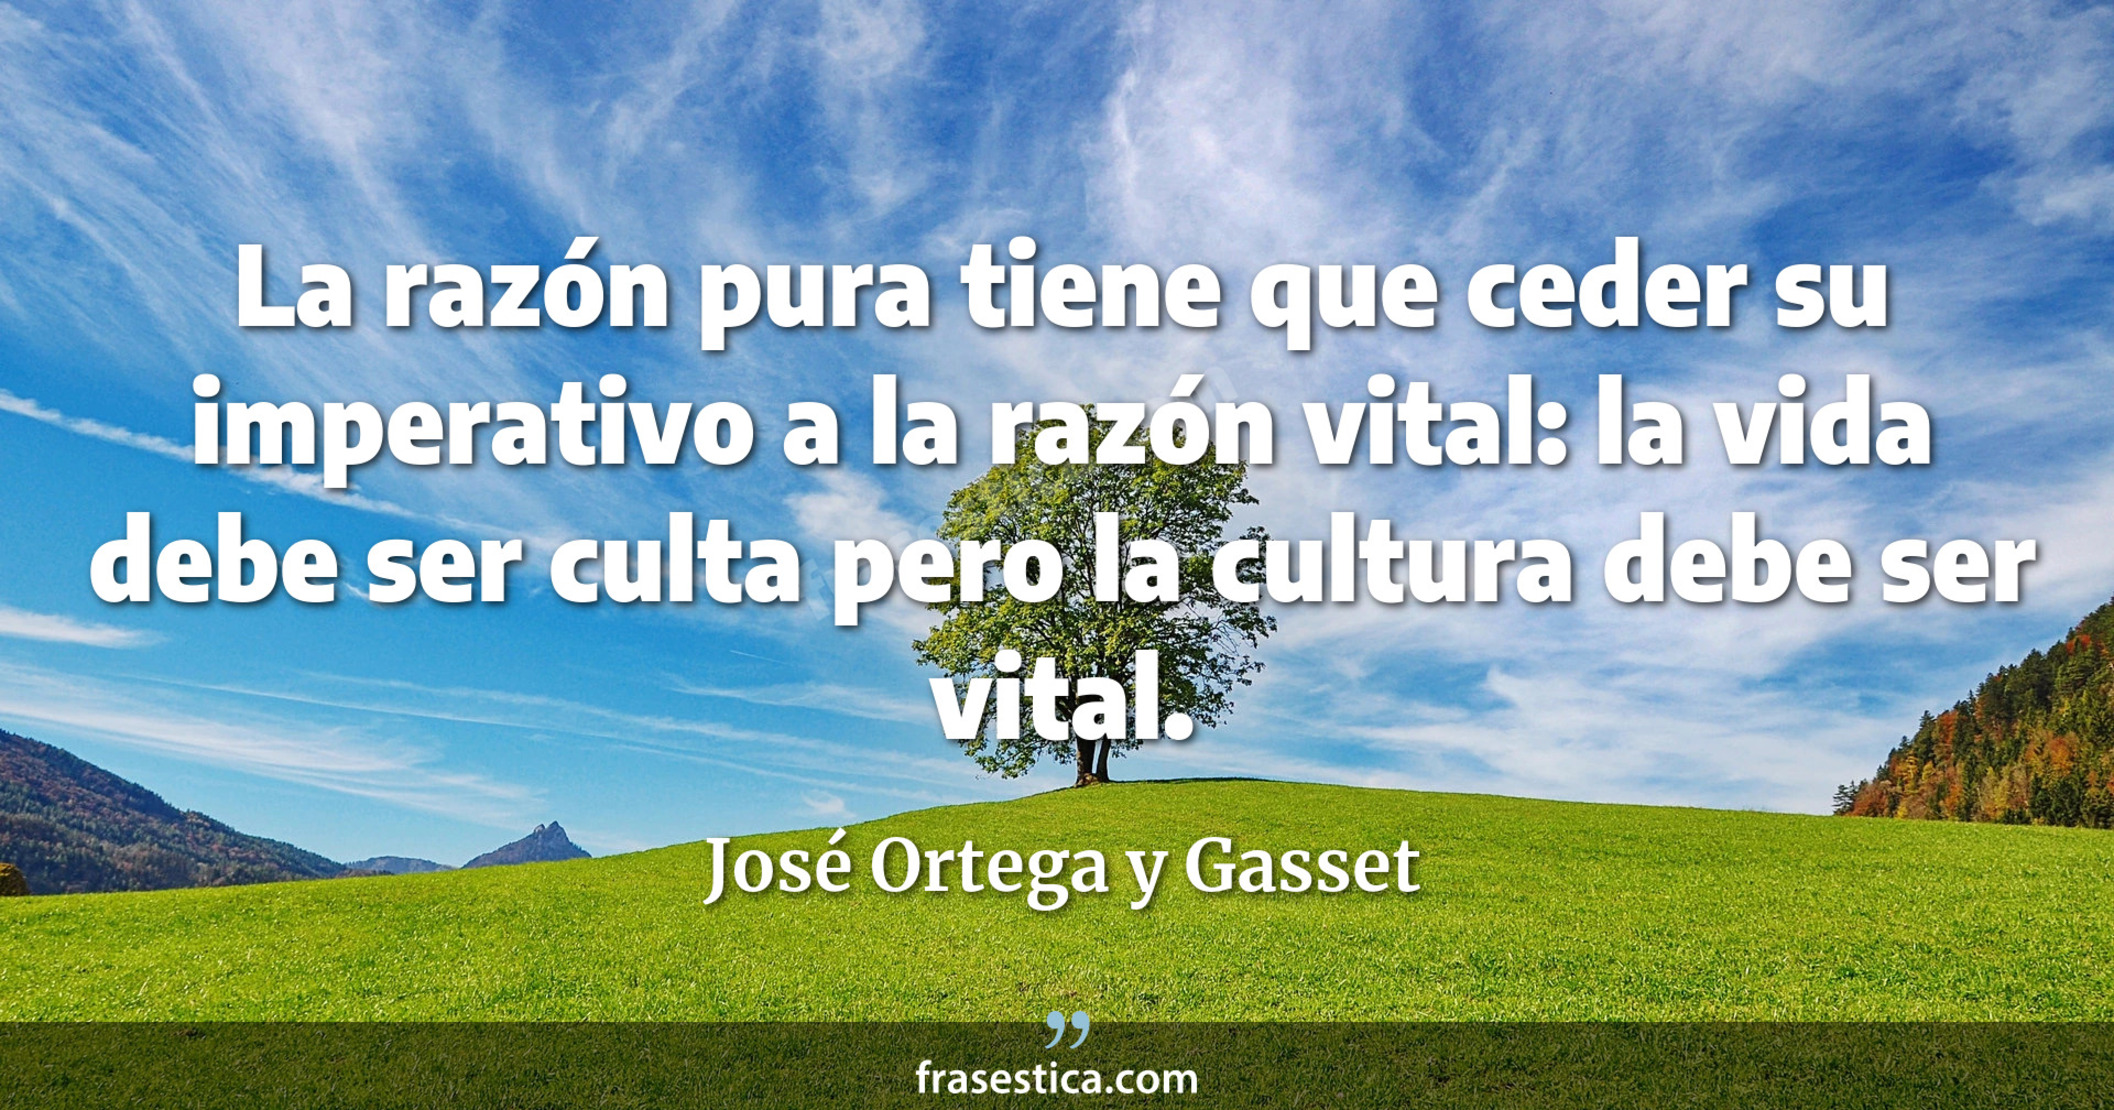 La razón pura tiene que ceder su imperativo a la razón vital: la vida debe ser culta pero la cultura debe ser vital. - José Ortega y Gasset